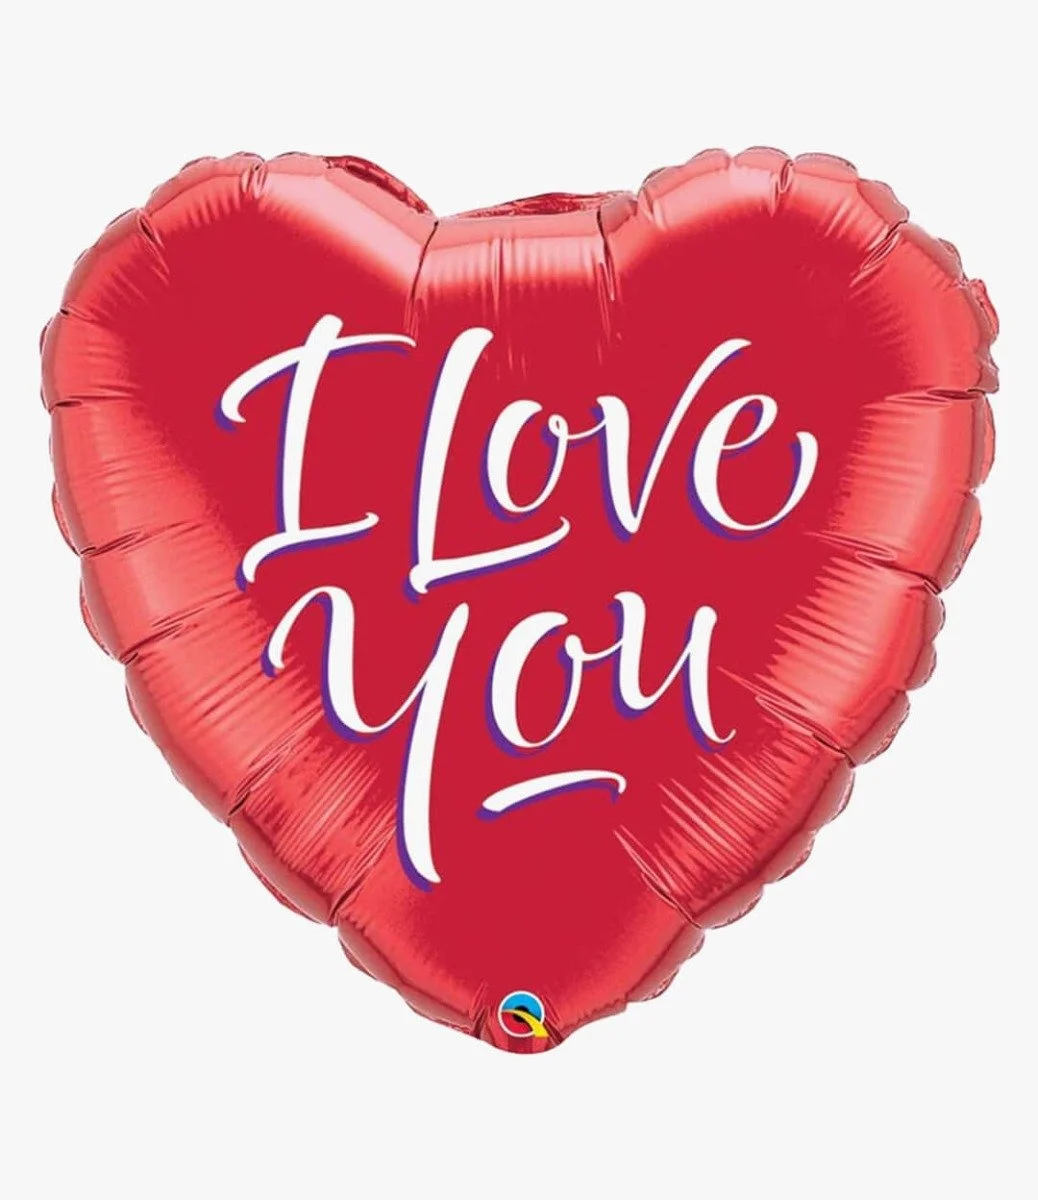 بالون هيليوم شكل قلب أحمر مع جملة "أنا أحبك"